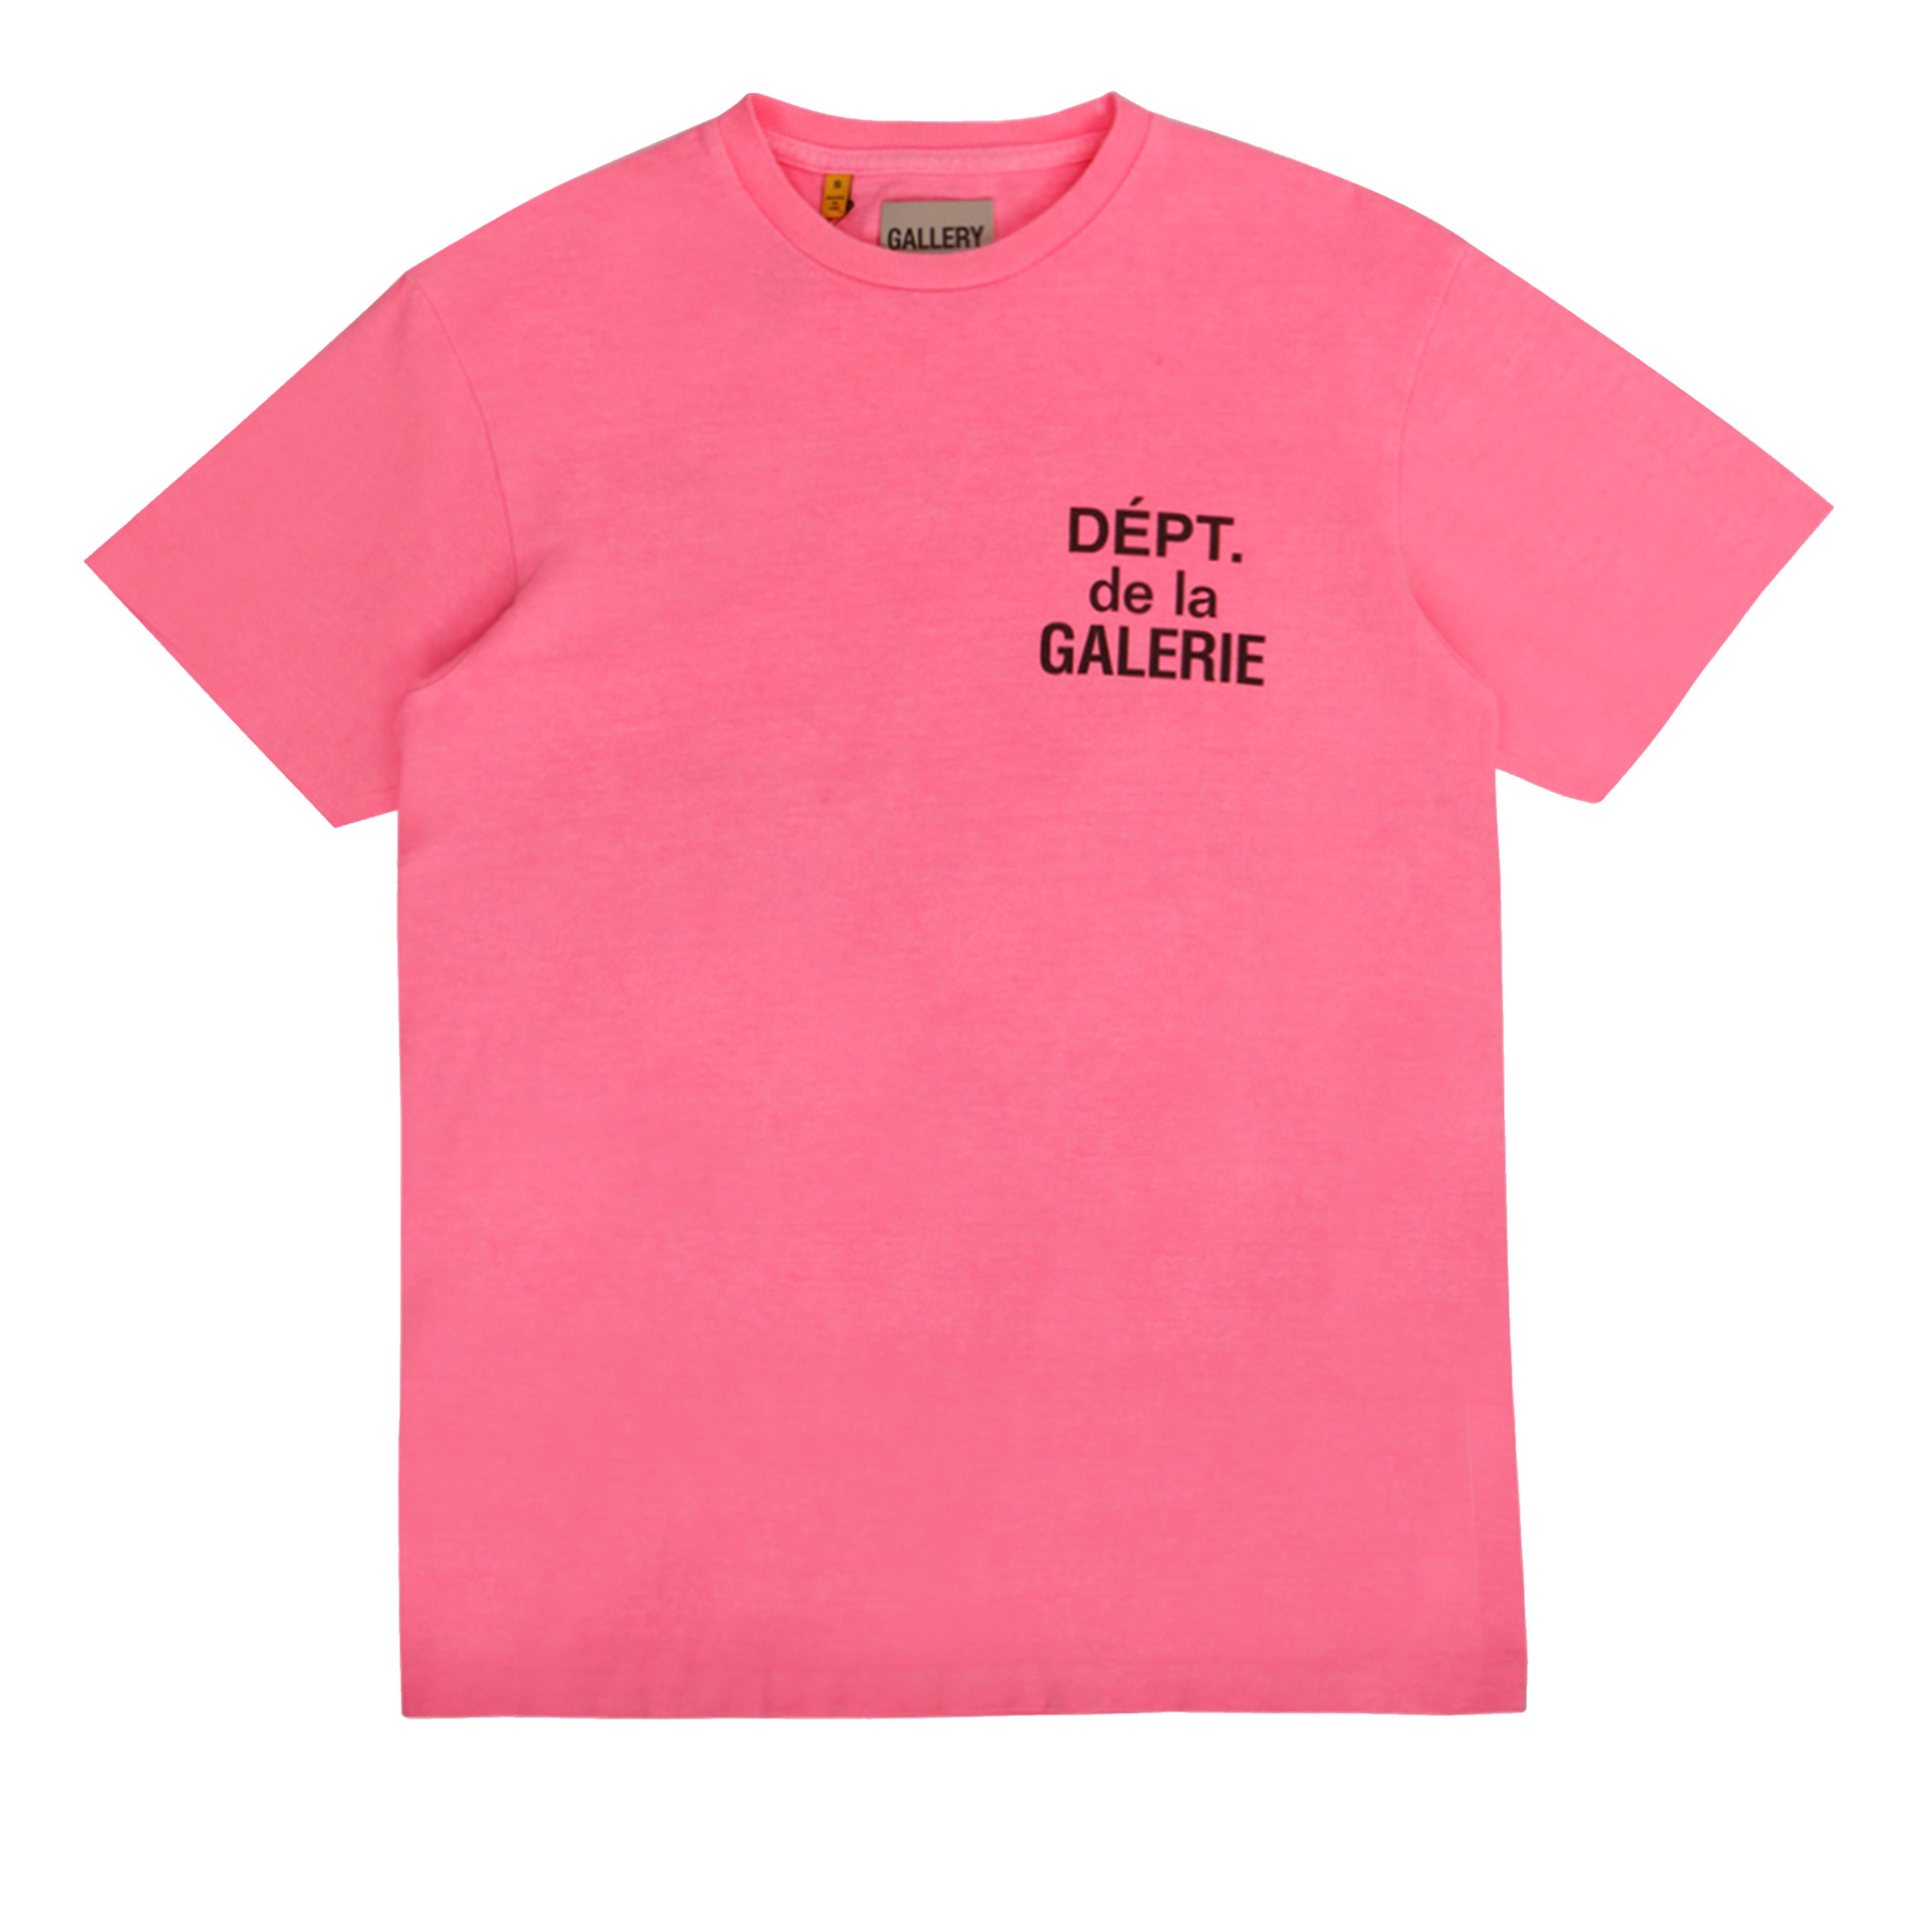 Gallery Dept. Flo Tee Neon Pink